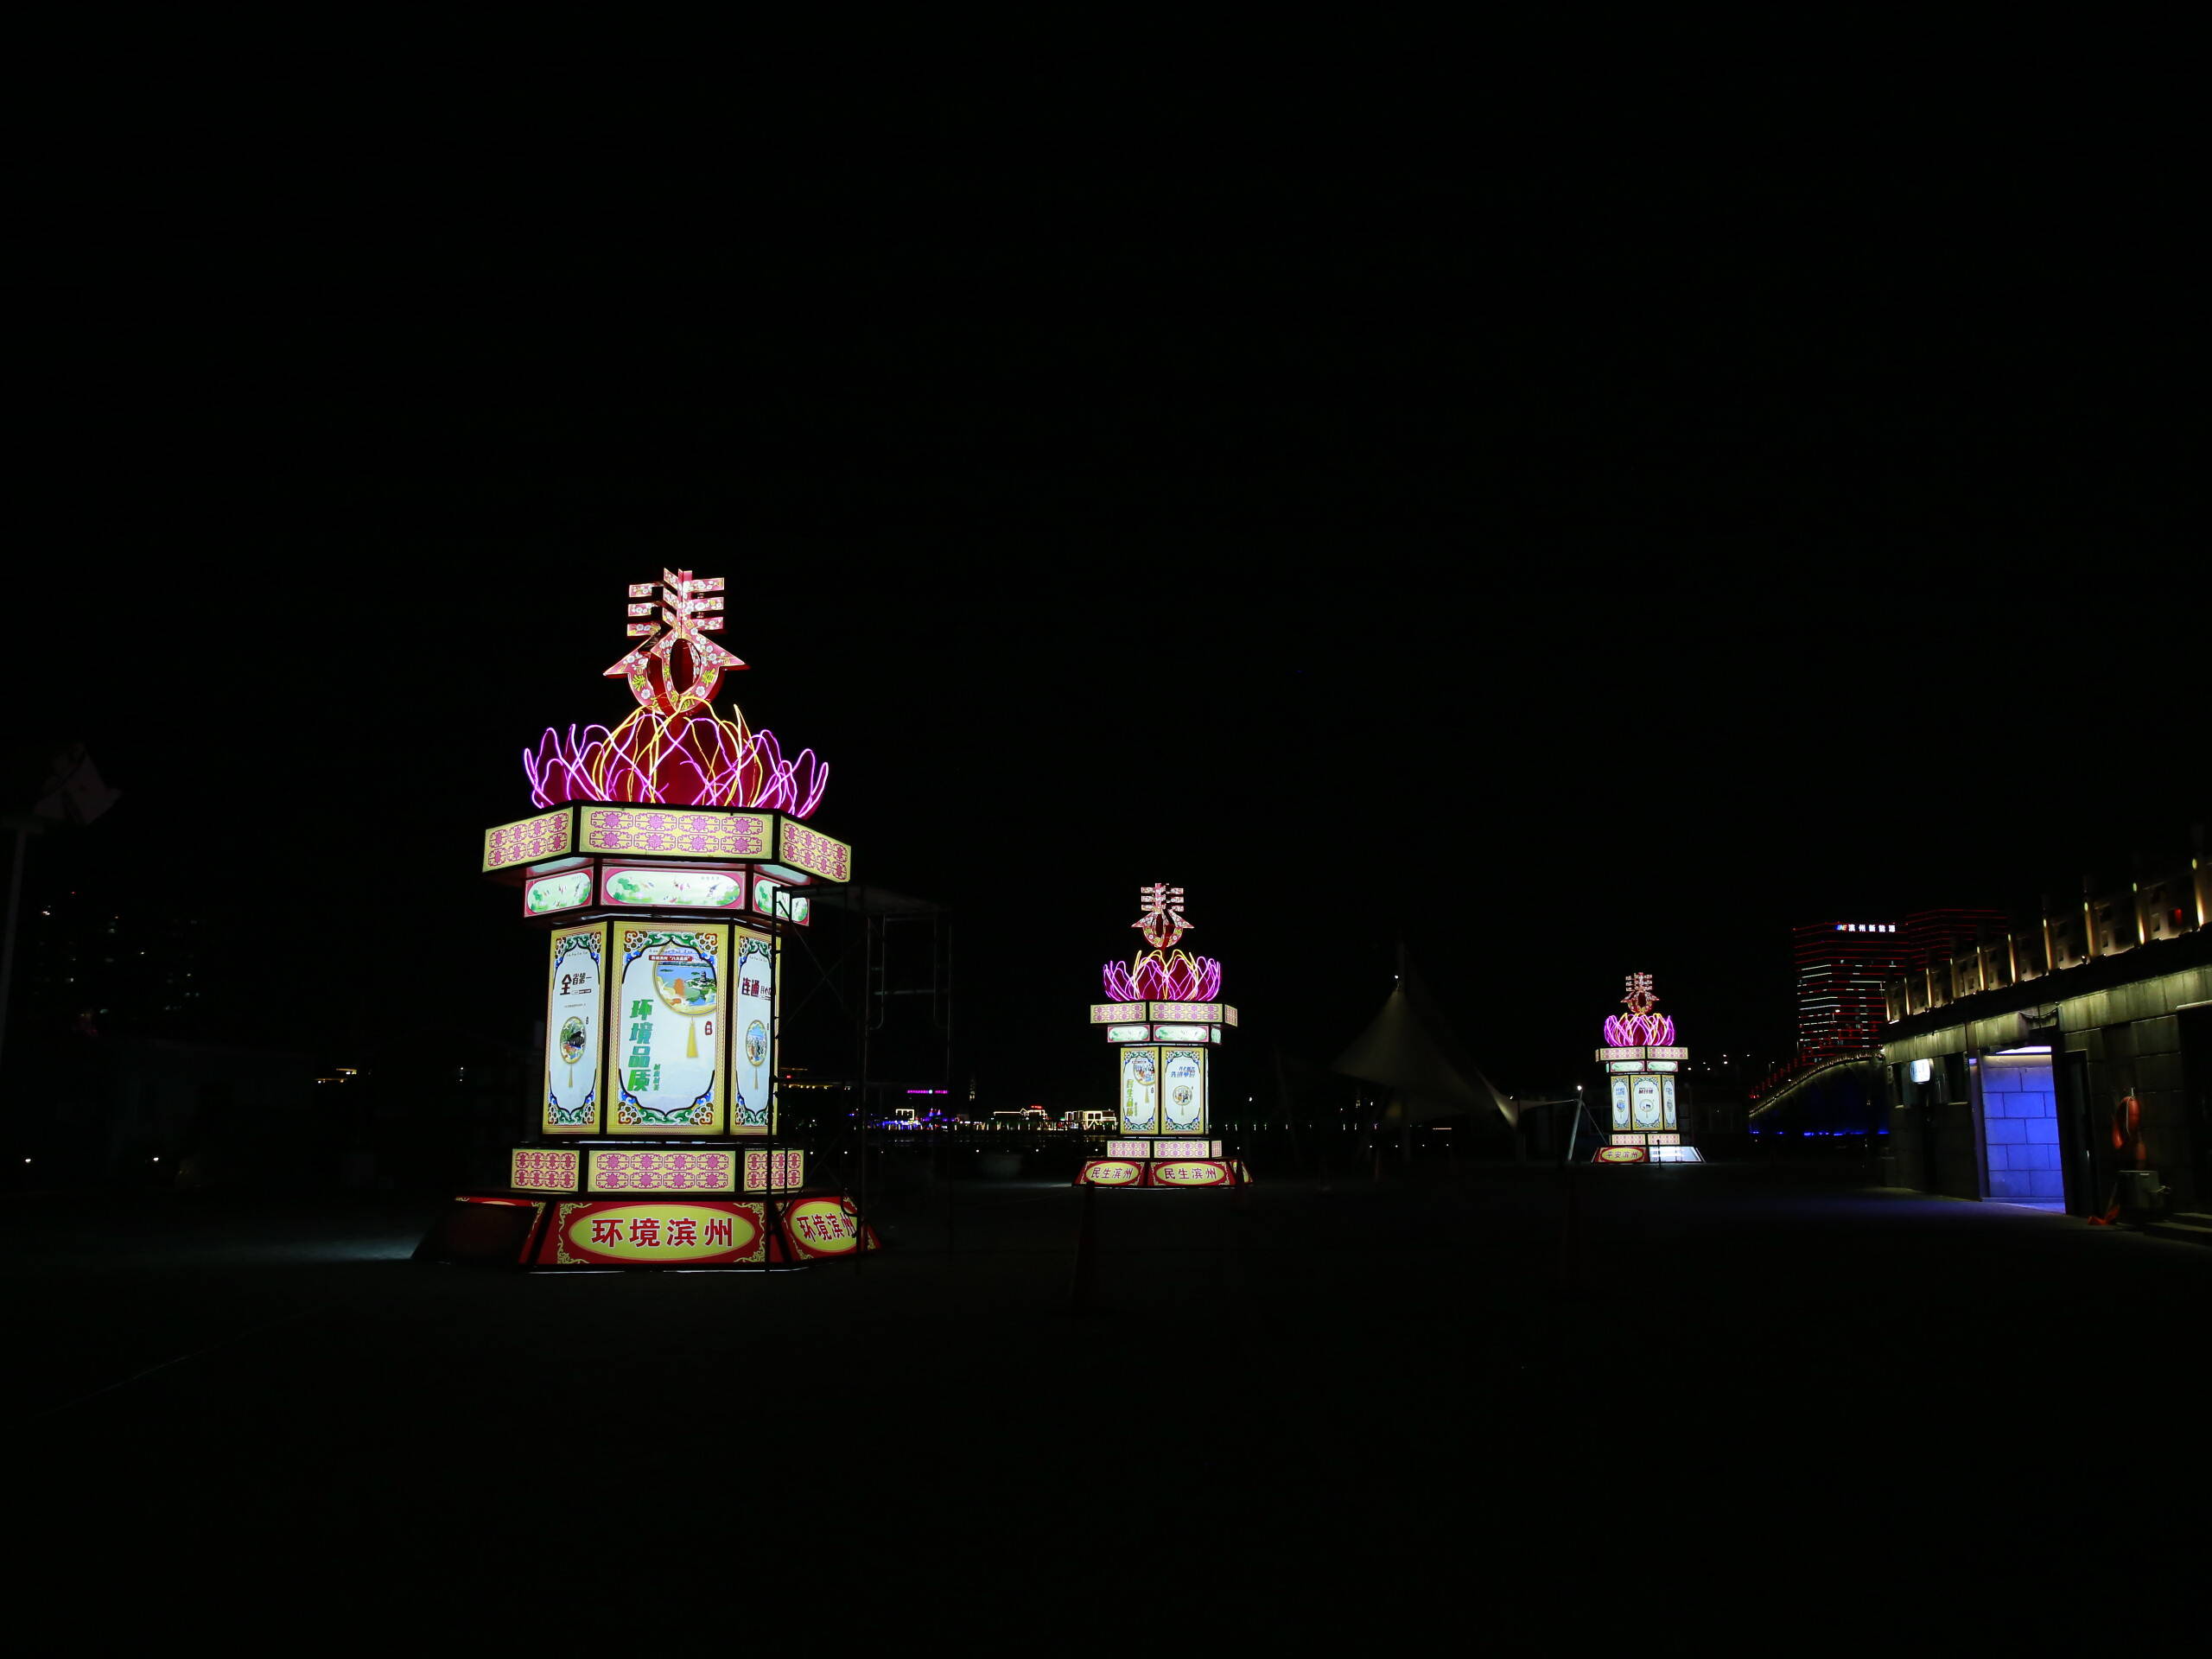 璀璨灯光点亮滨州 全城“拉满”新年气氛